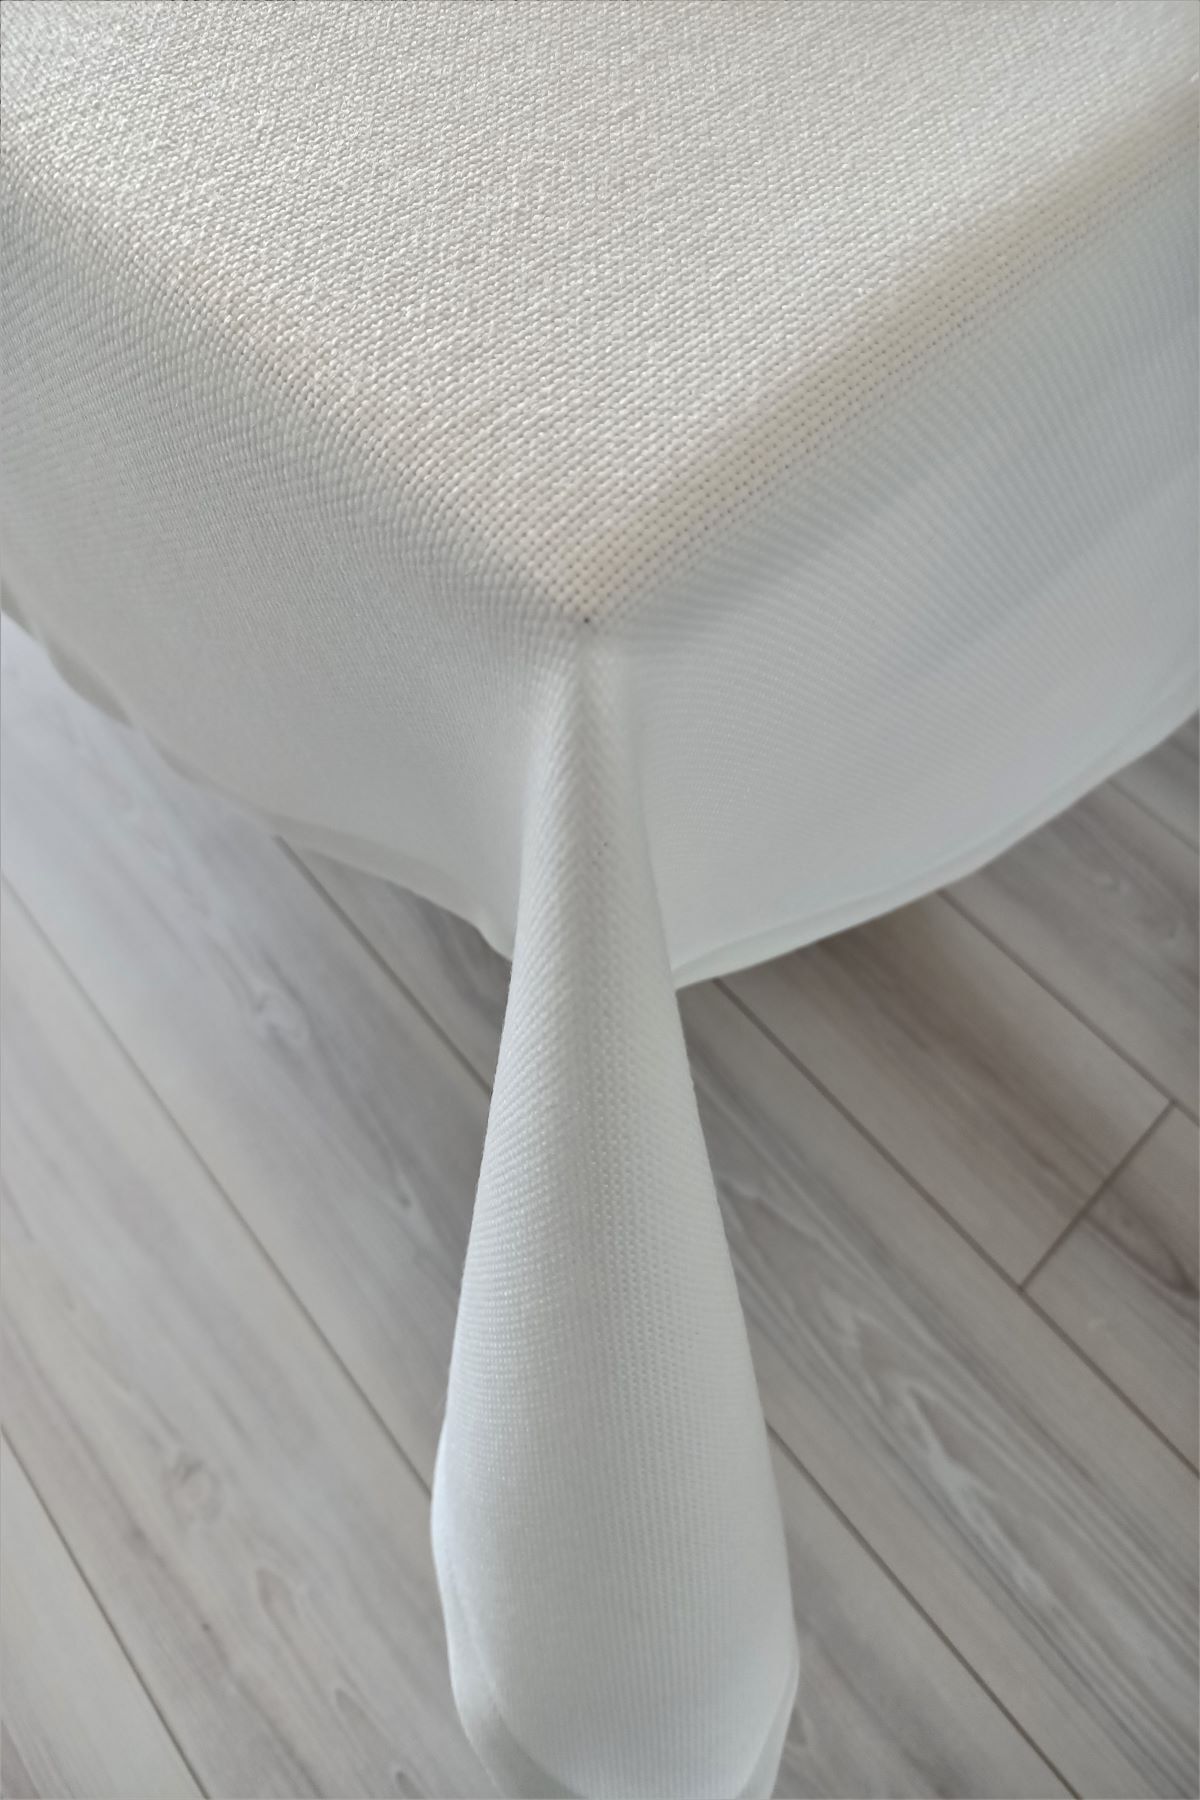 eno concept Premium Kalite Keten Görünümlü Leke Tutmaz Beyaz Masa Örtüsü